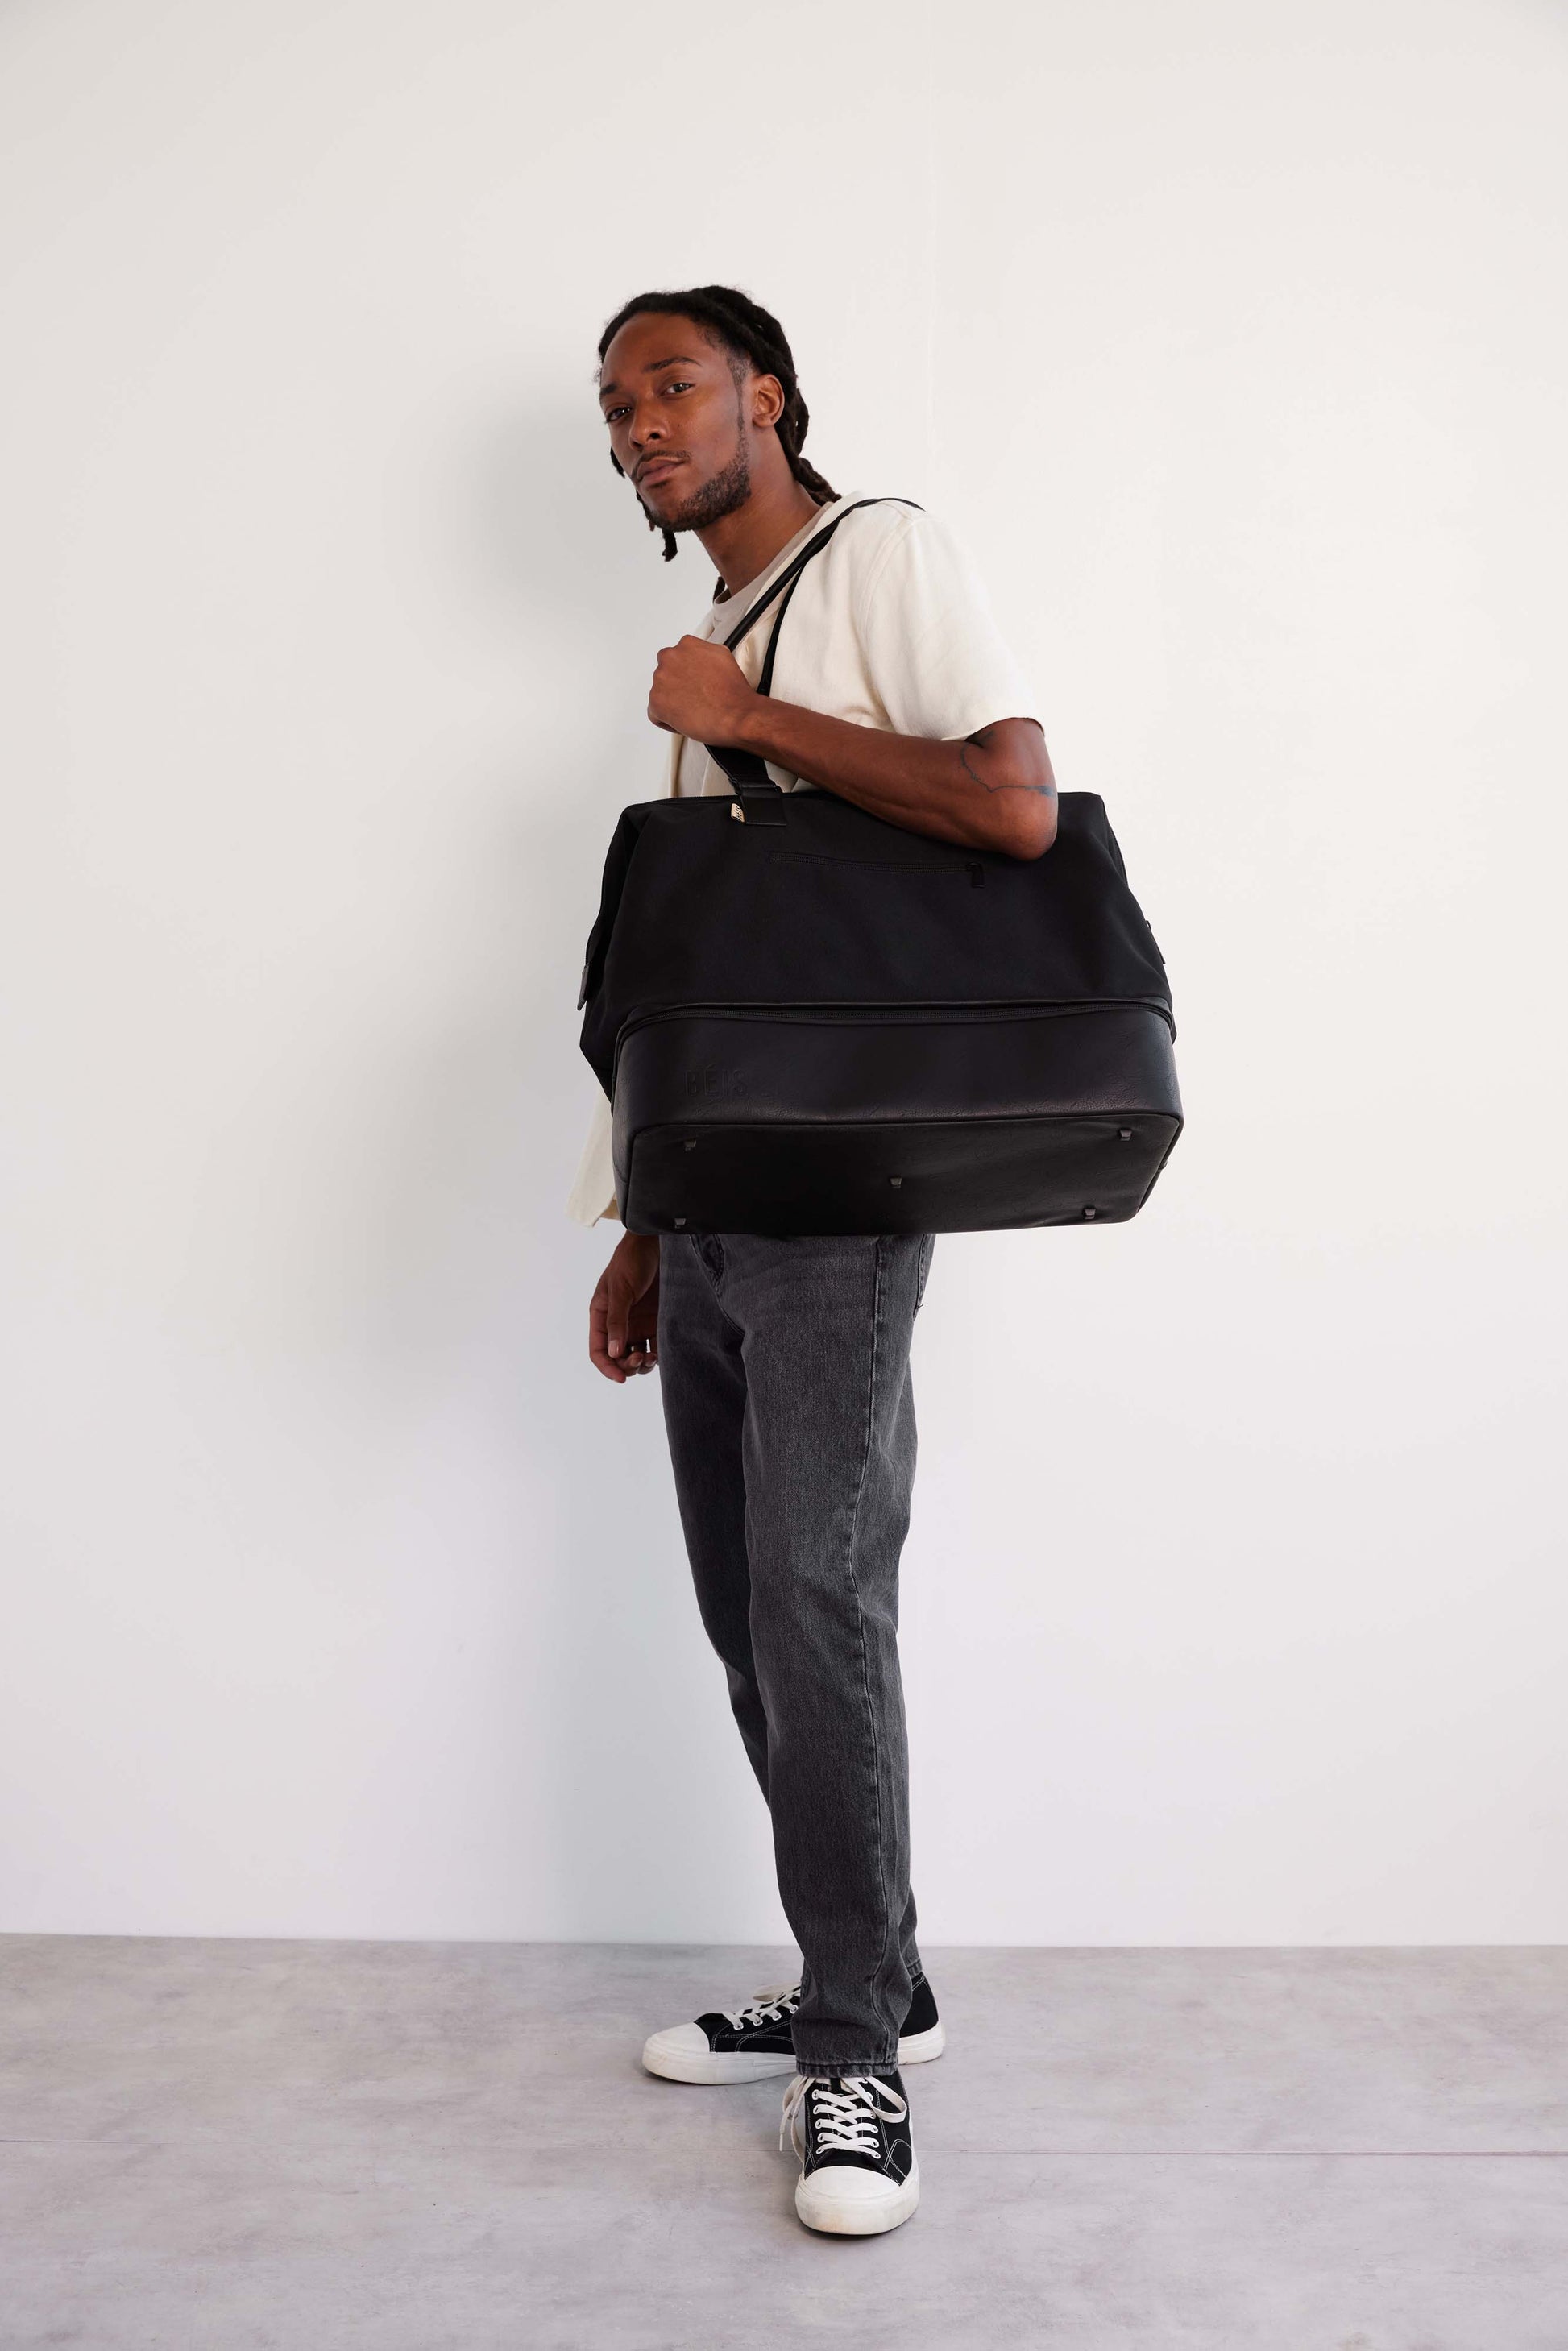 The Weekender Bag - black, Women's Bags